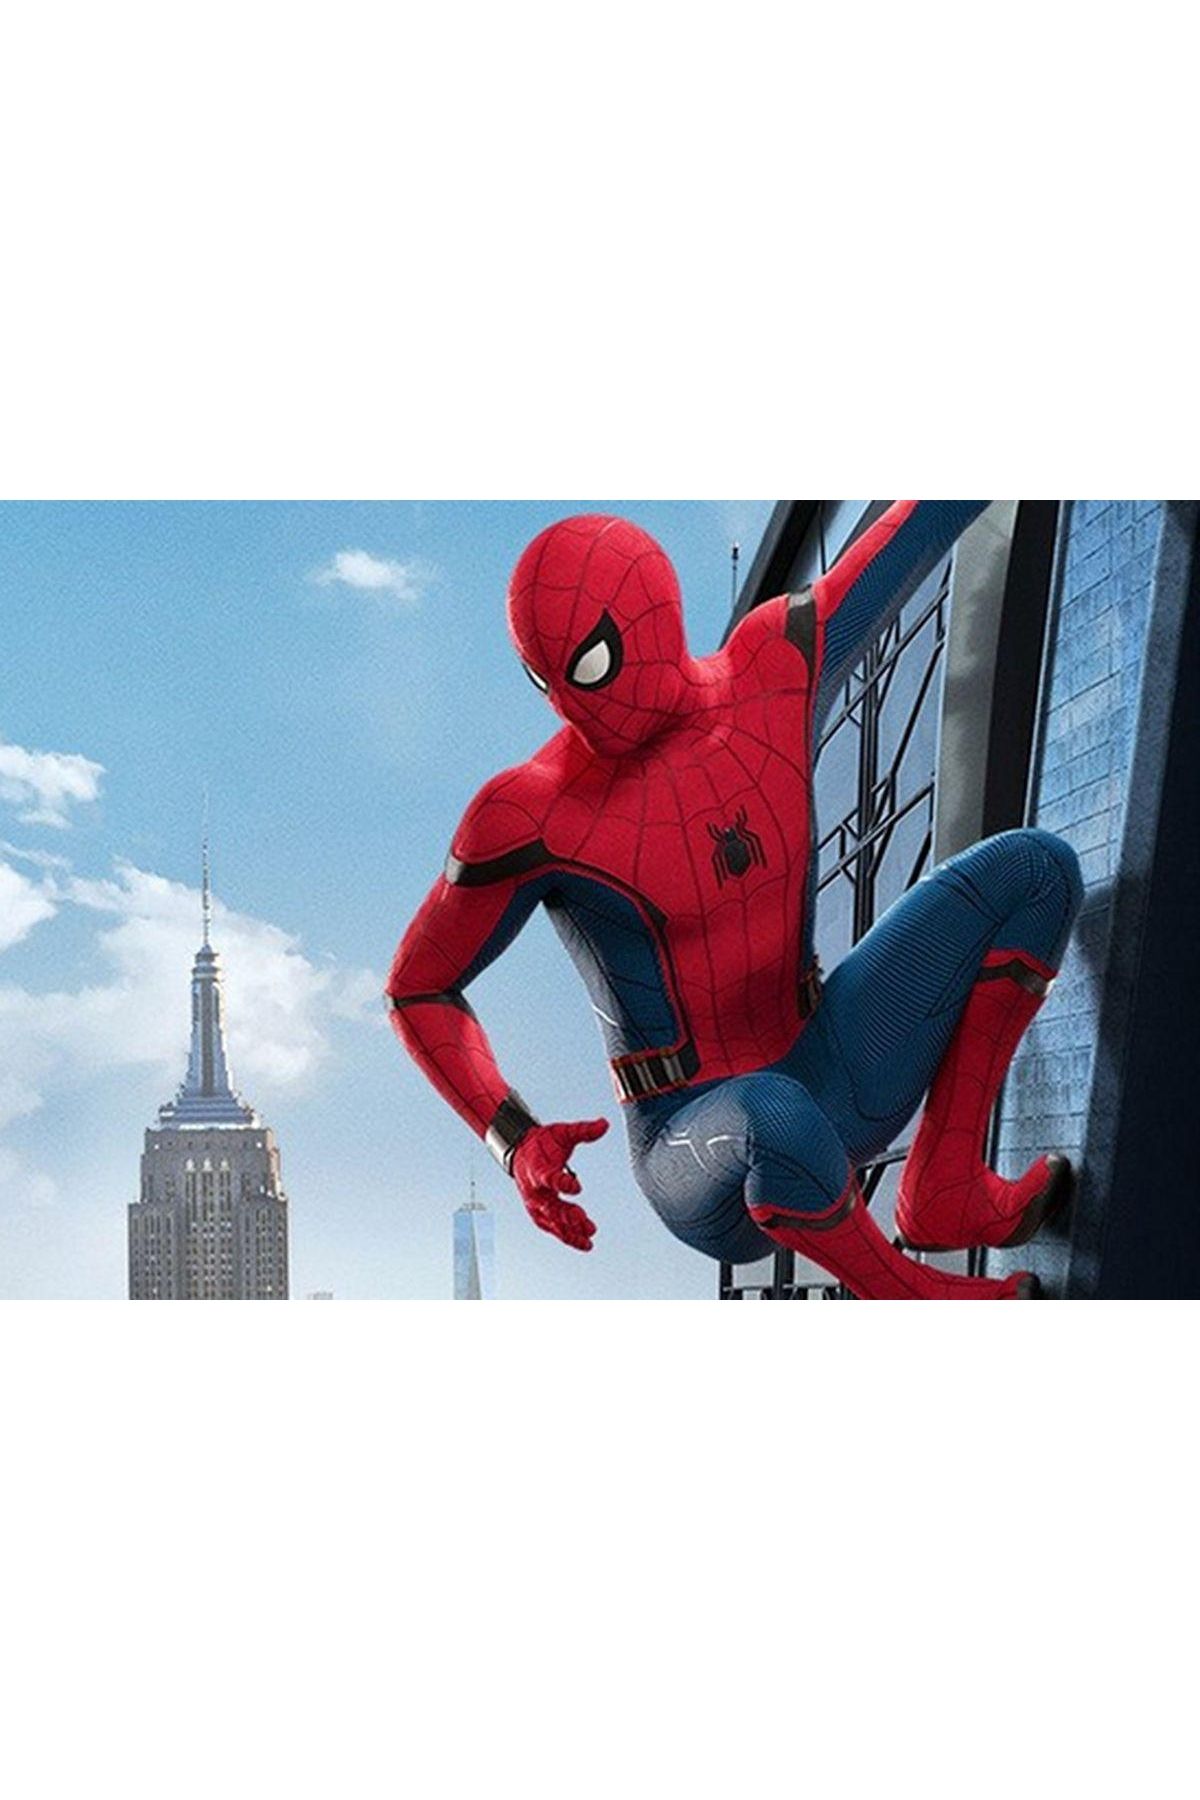 Evistro Spiderman Örümcek Adam Çocuk Kostümü S Beden 3-5 Yaş